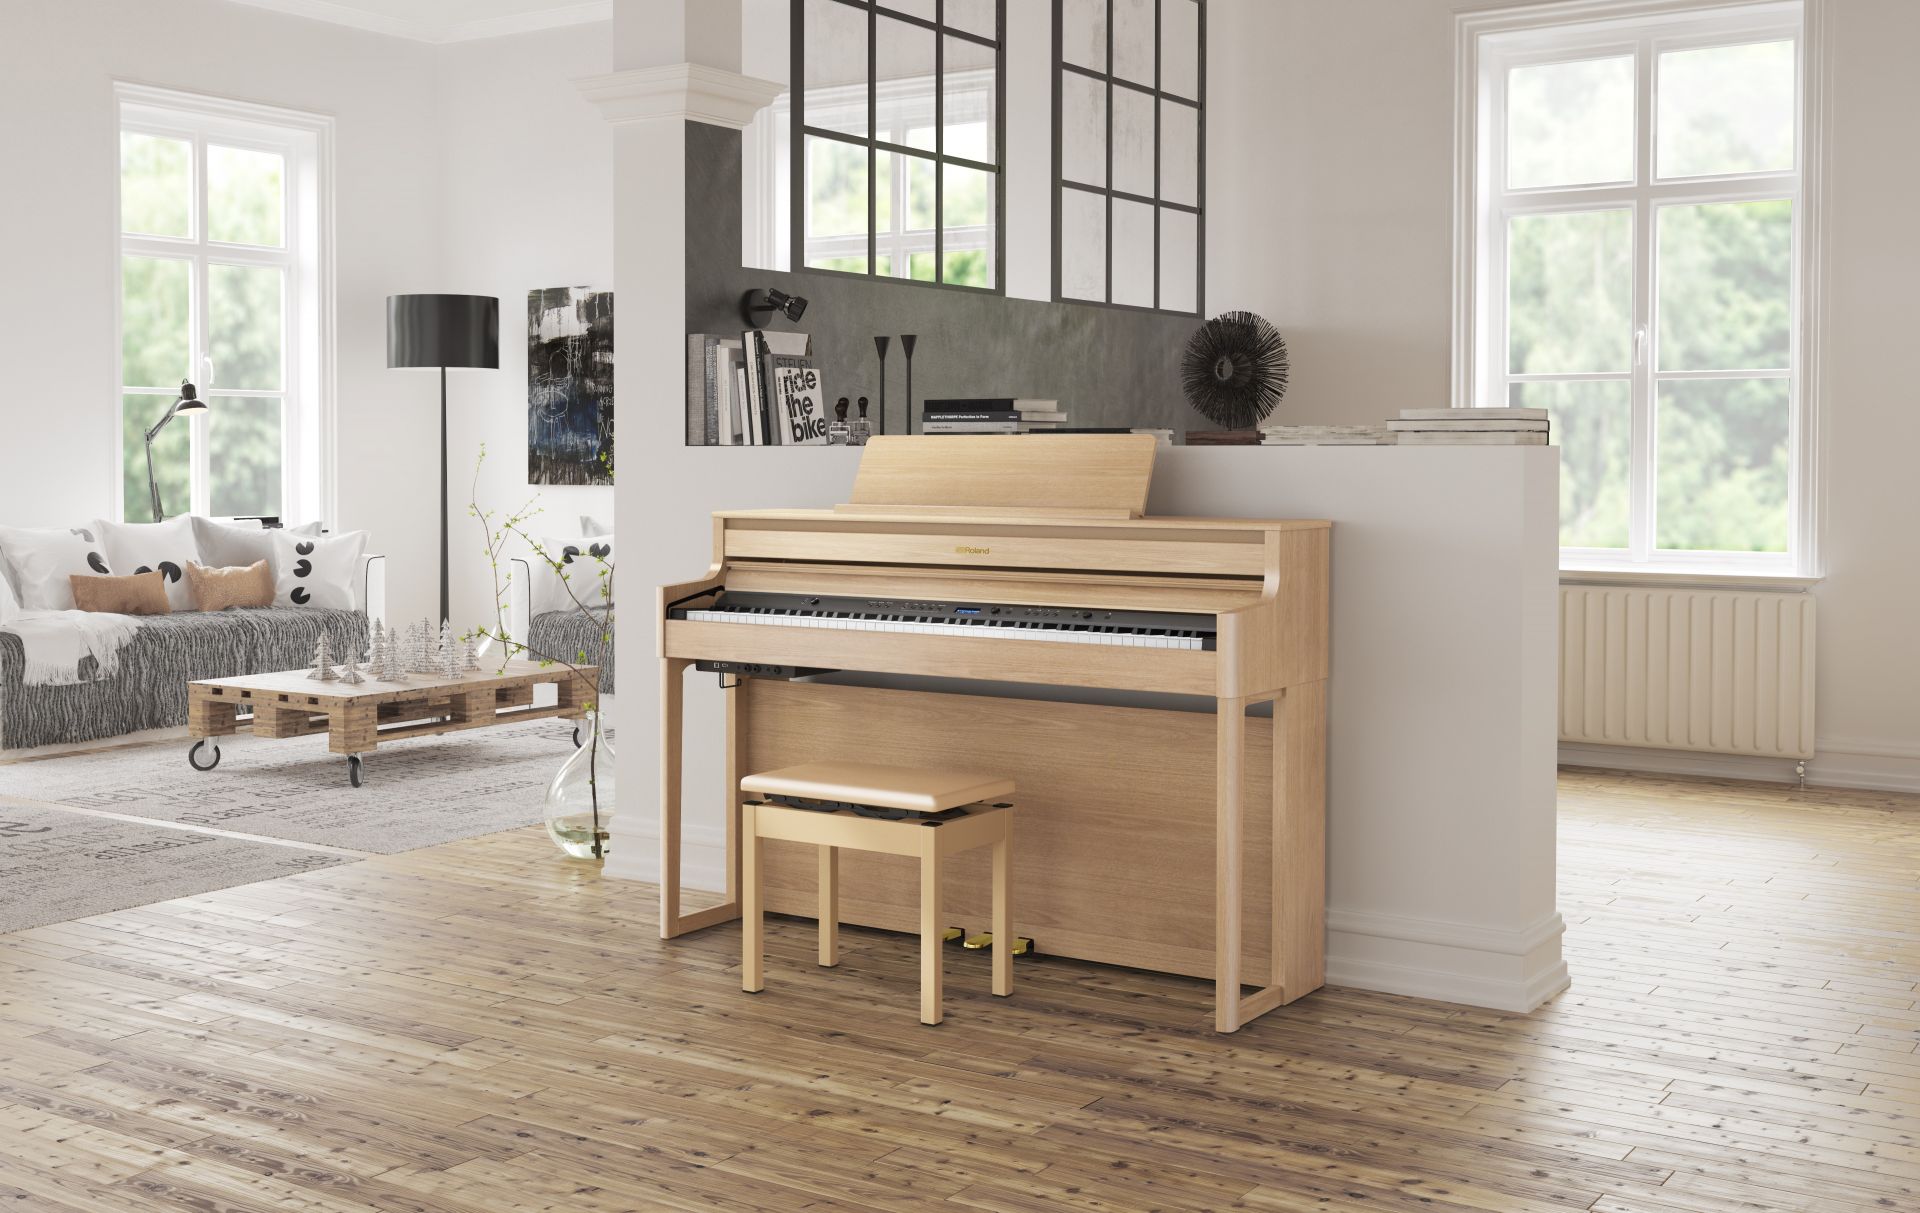 【電子ピアノ】HP700シリーズ全2機種『 HP704』/『HP702』店頭展示中！比較できます!